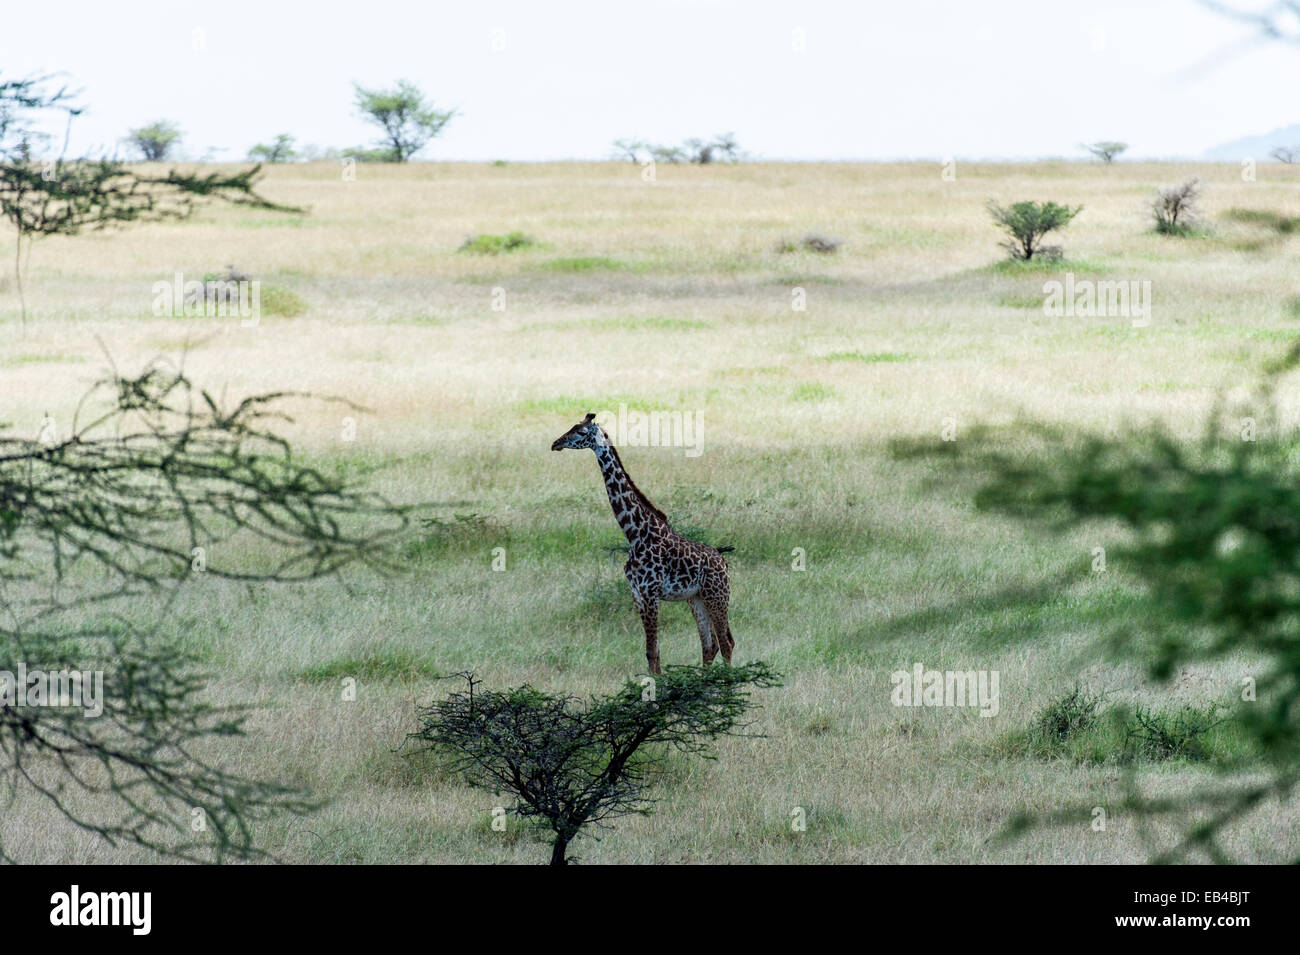 A Maasai giraffe standing on a vast savannah grassland plain. Stock Photo